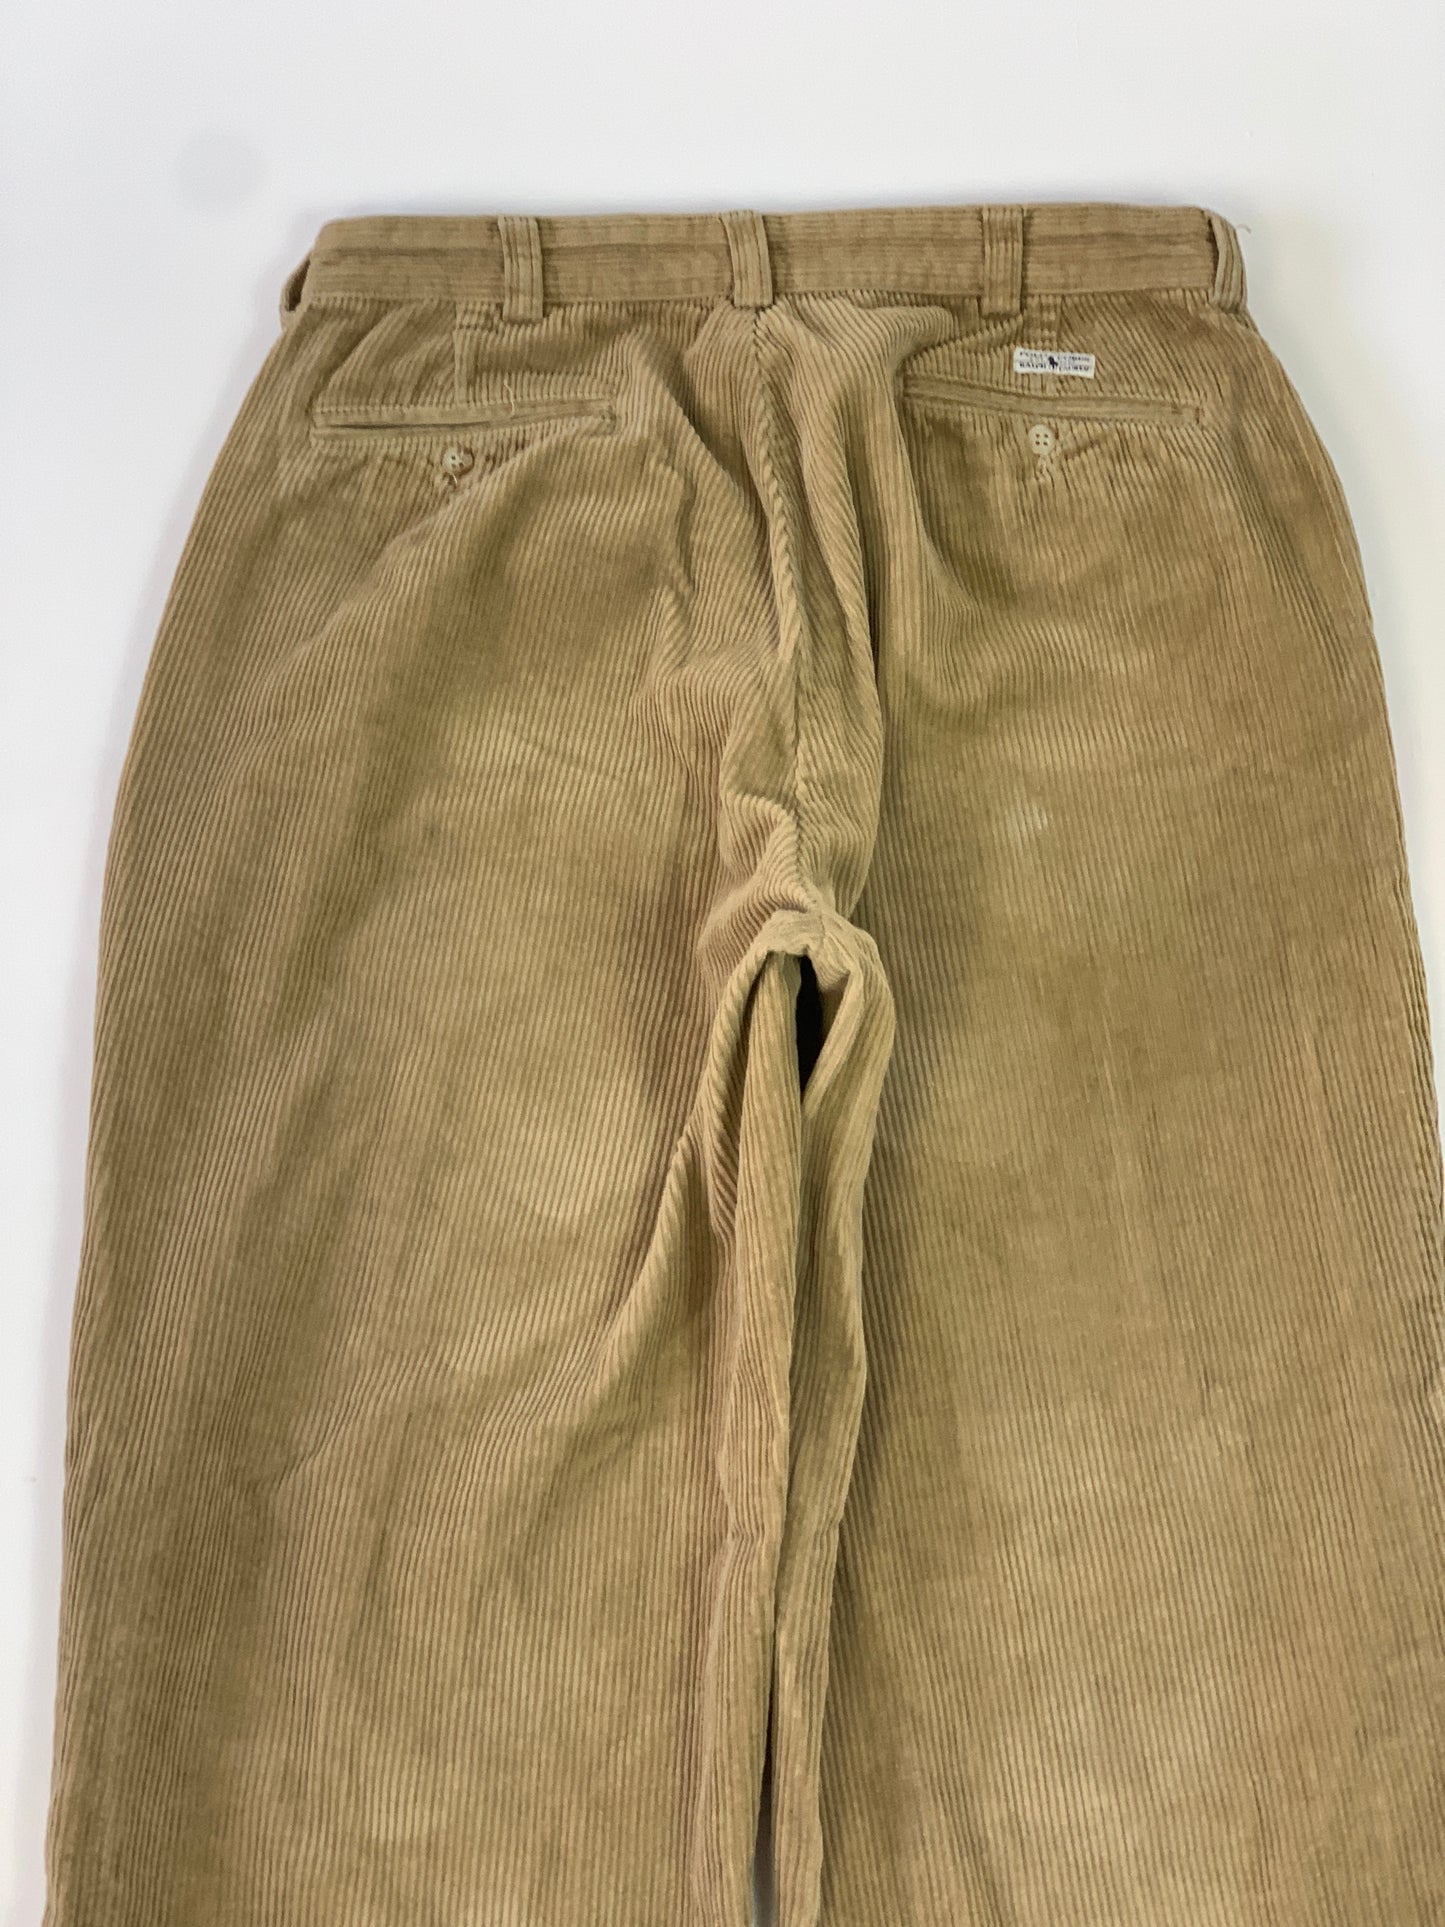 Ralph Lauren Vintage Corduroy Pants - 34